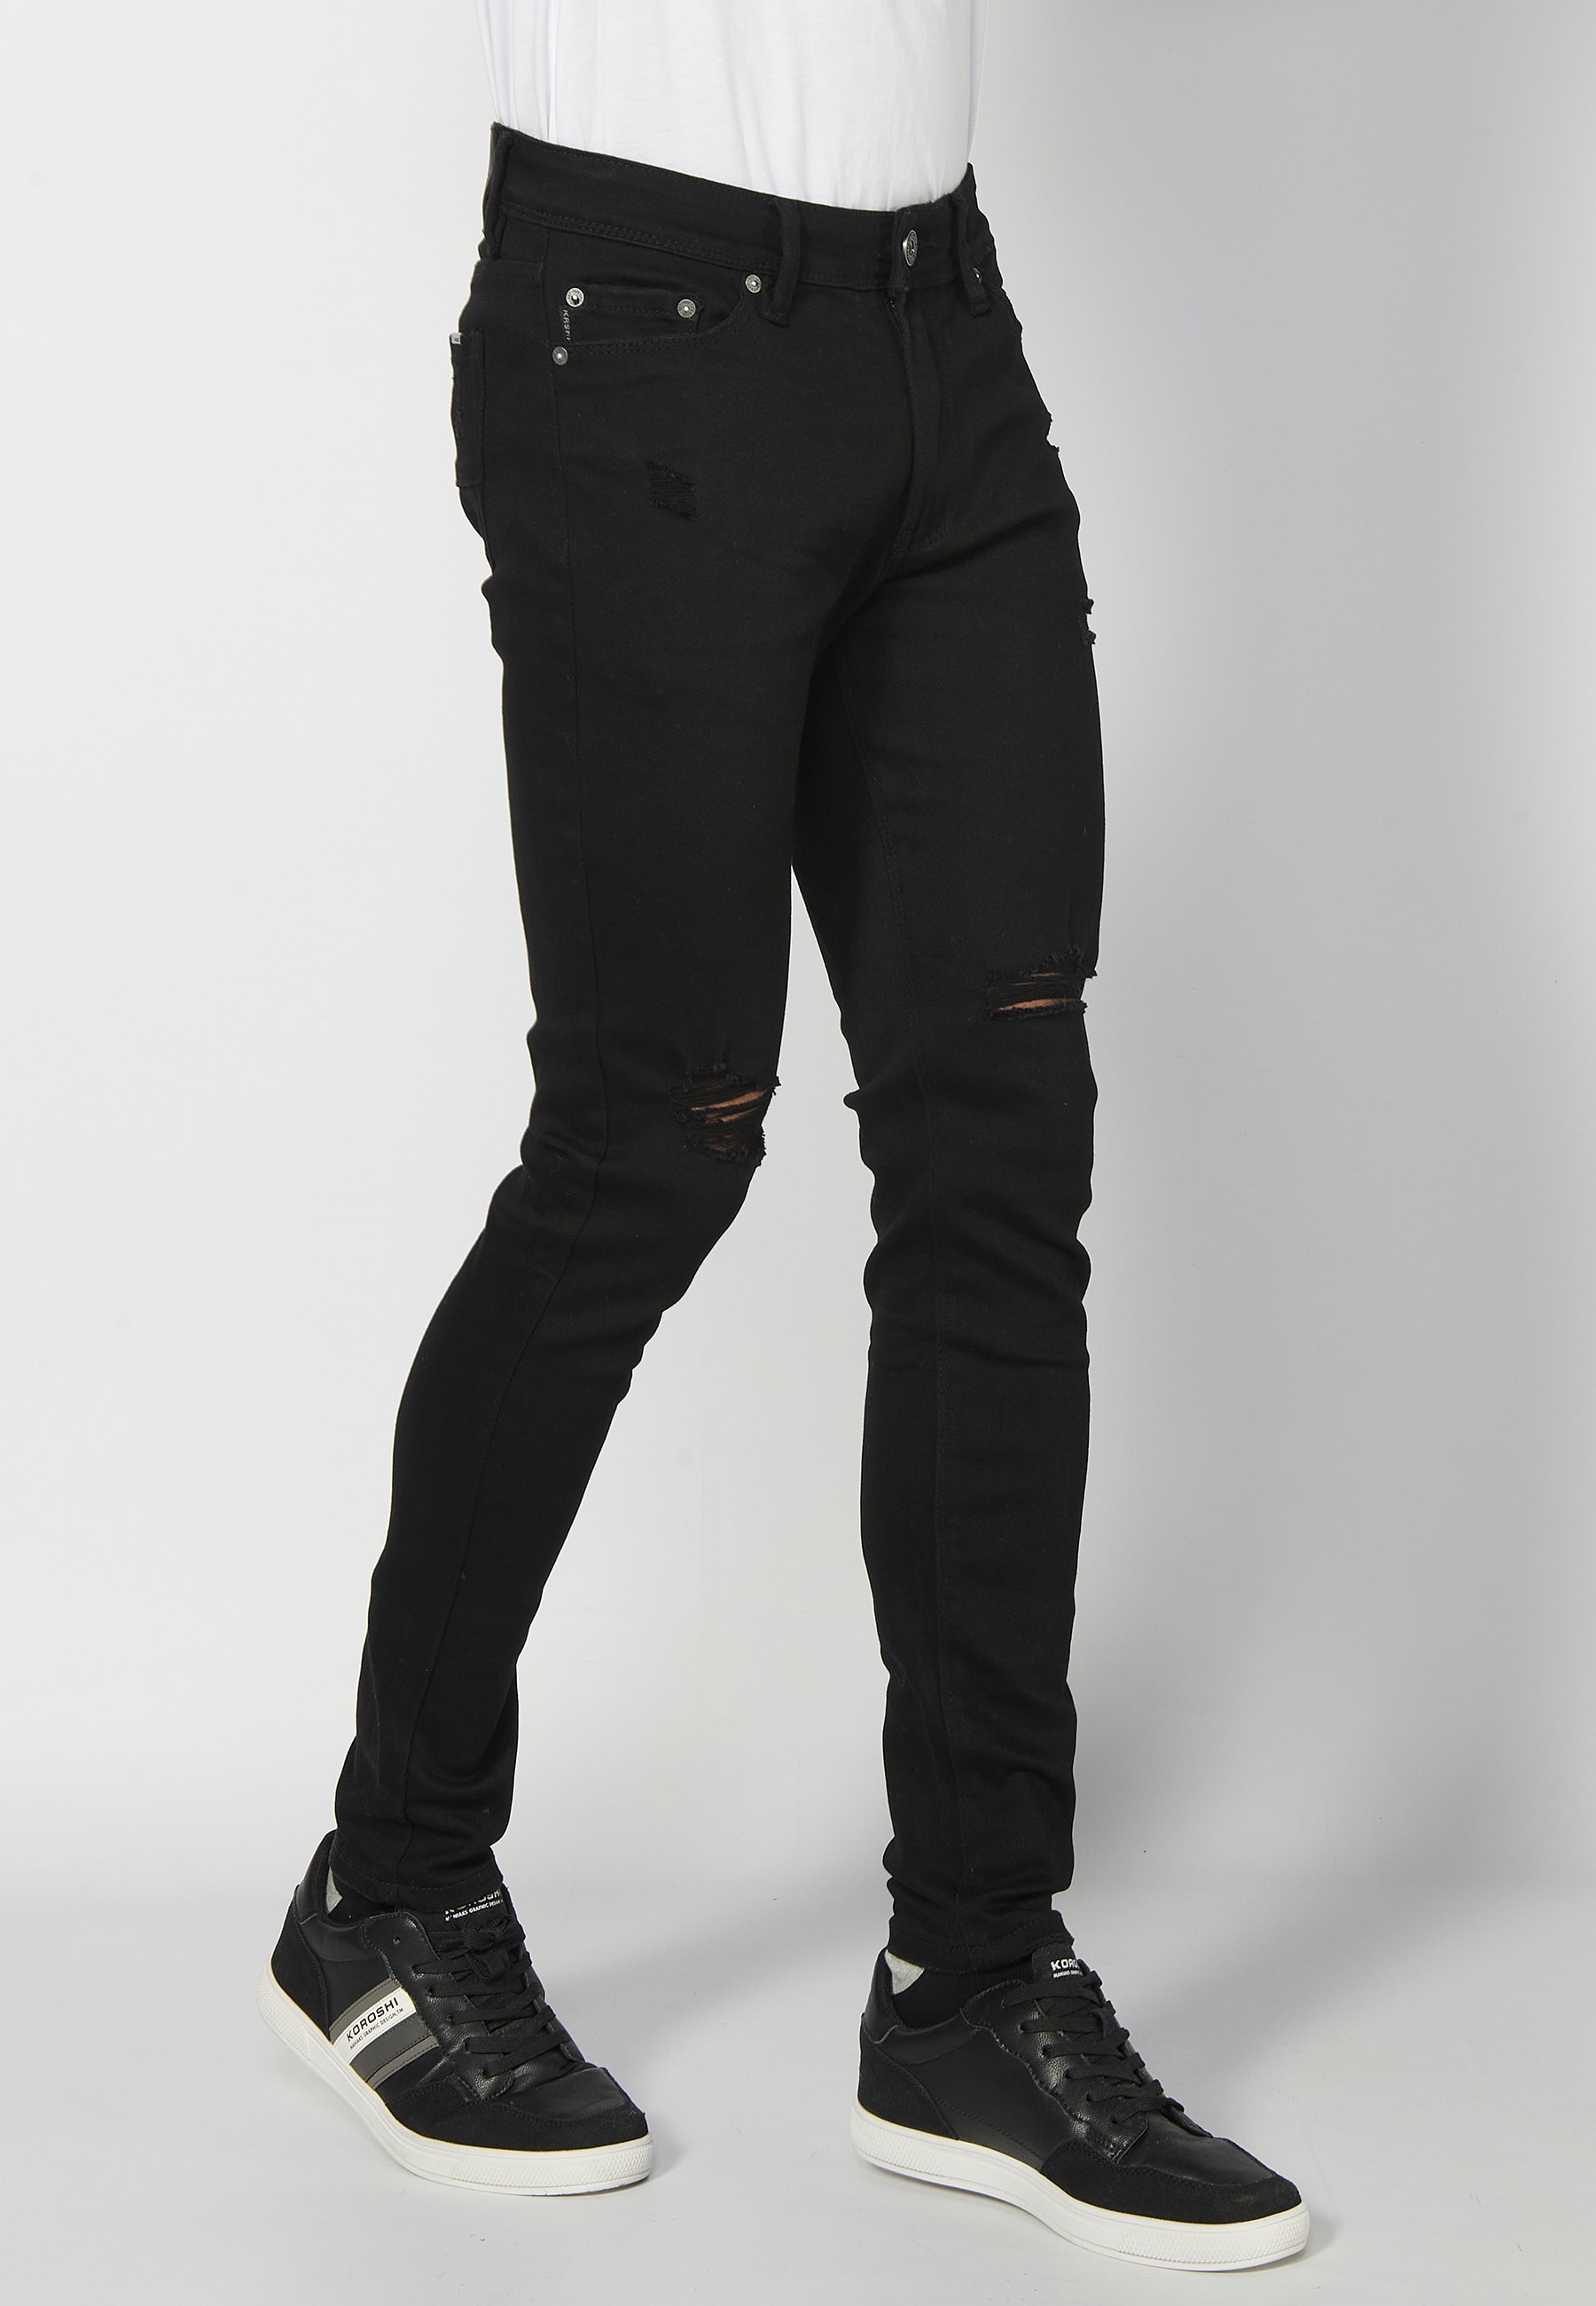 Pantalons llargs super skinny, amb cinc butxaques, color Negre per a Home 6